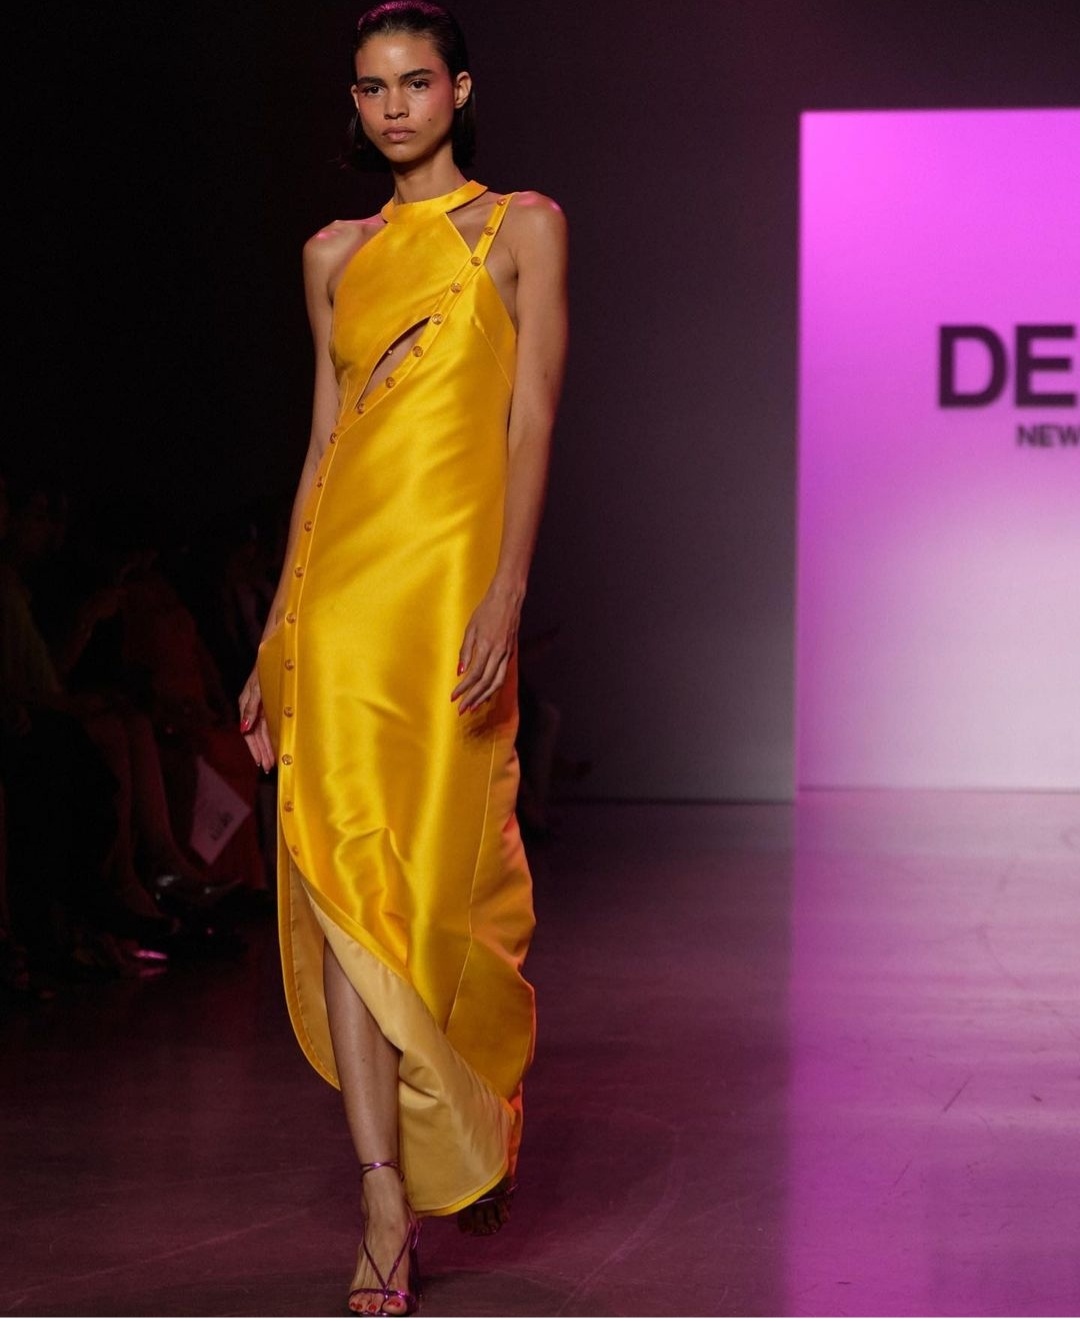 فستان أصفر من عرض Deitynewyork الصورة 3 من حساب Nyfw على انستغرام 